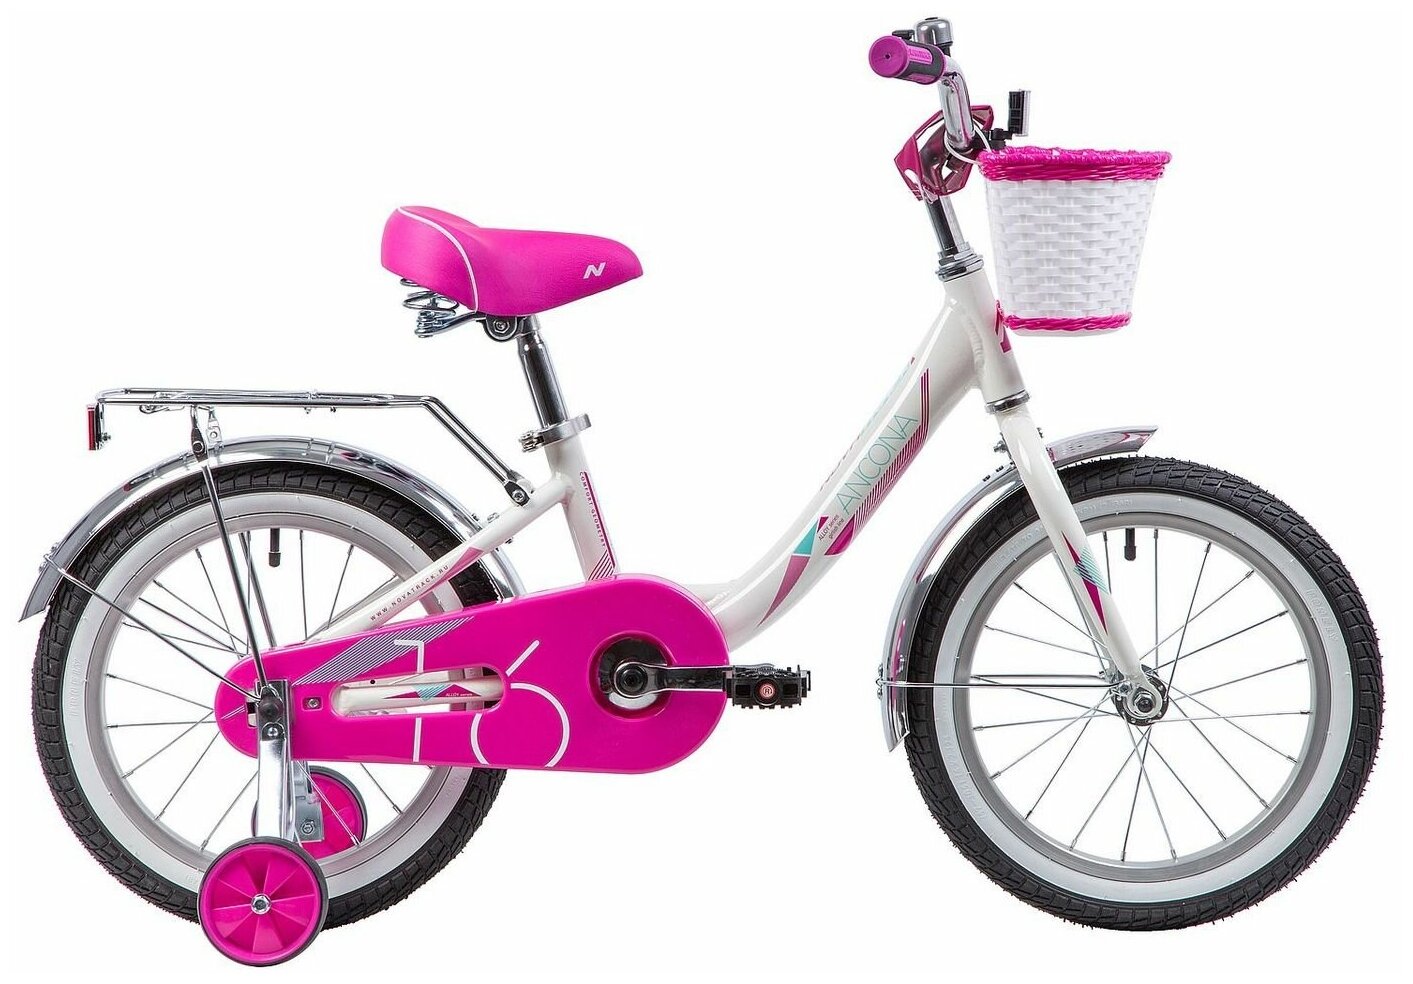 Детский велосипед Novatrack Ancona 16, год 2019, цвет Белый